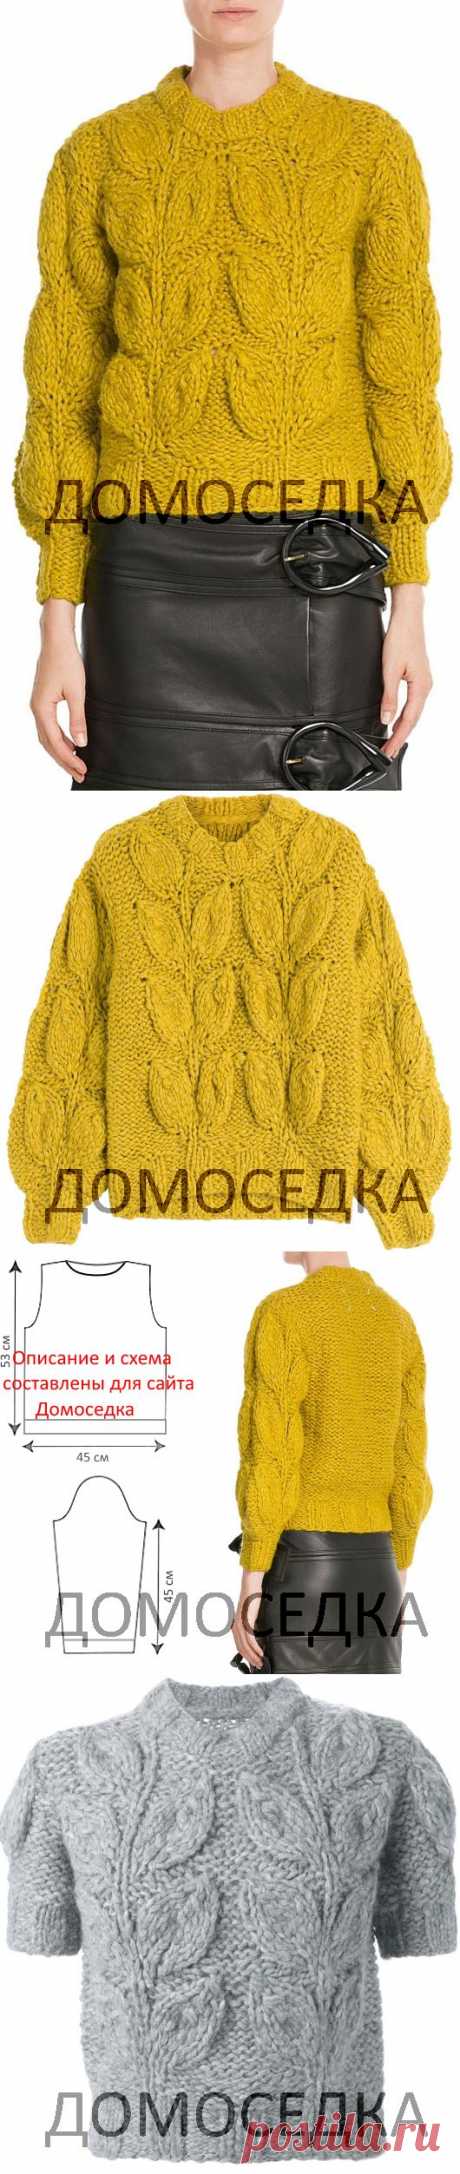 Модны свитер спицами | ДОМОСЕДКА